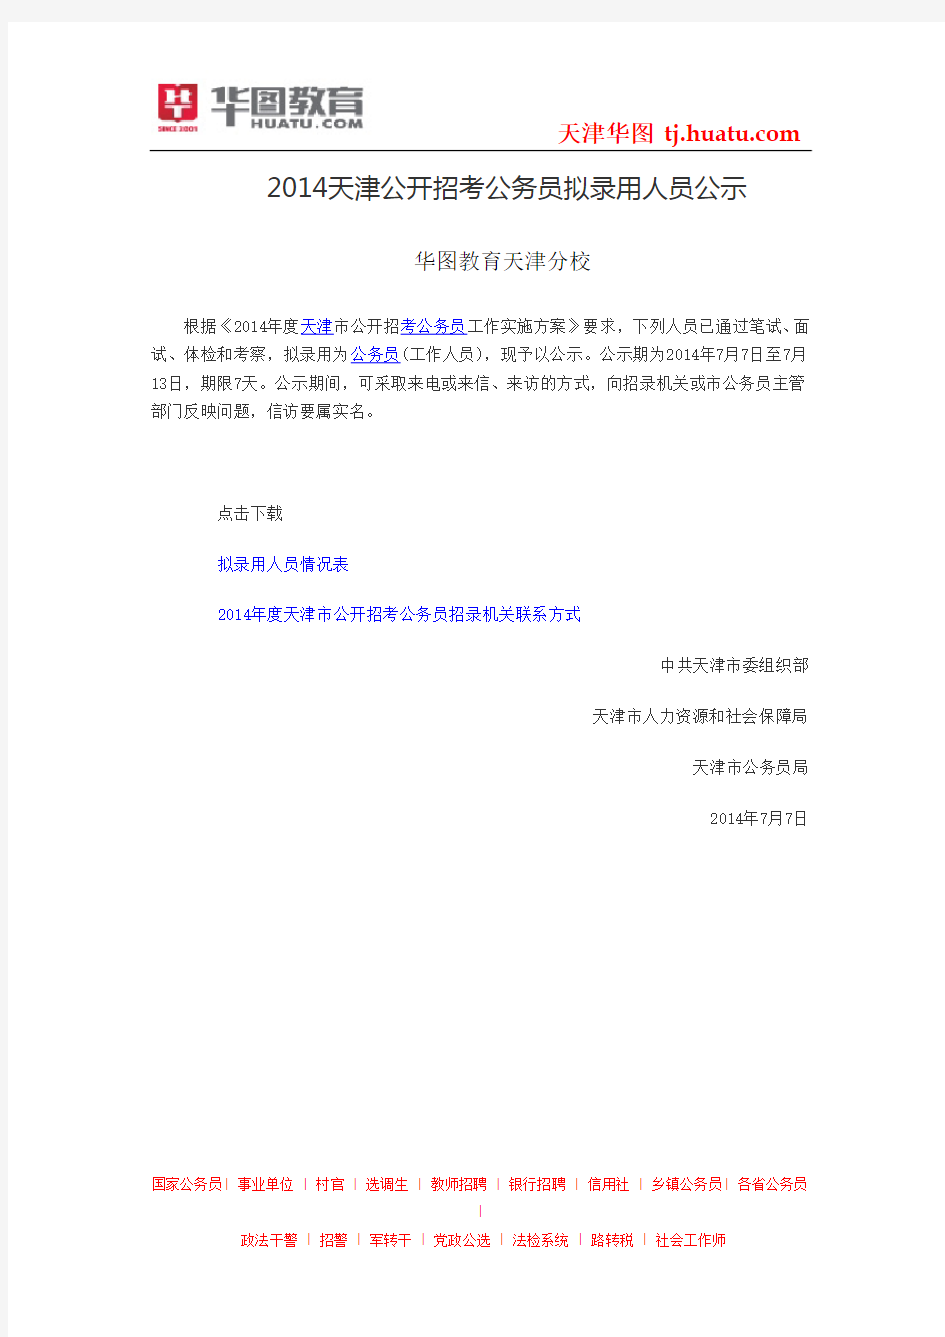 2014天津公开招考公务员拟录用人员公示